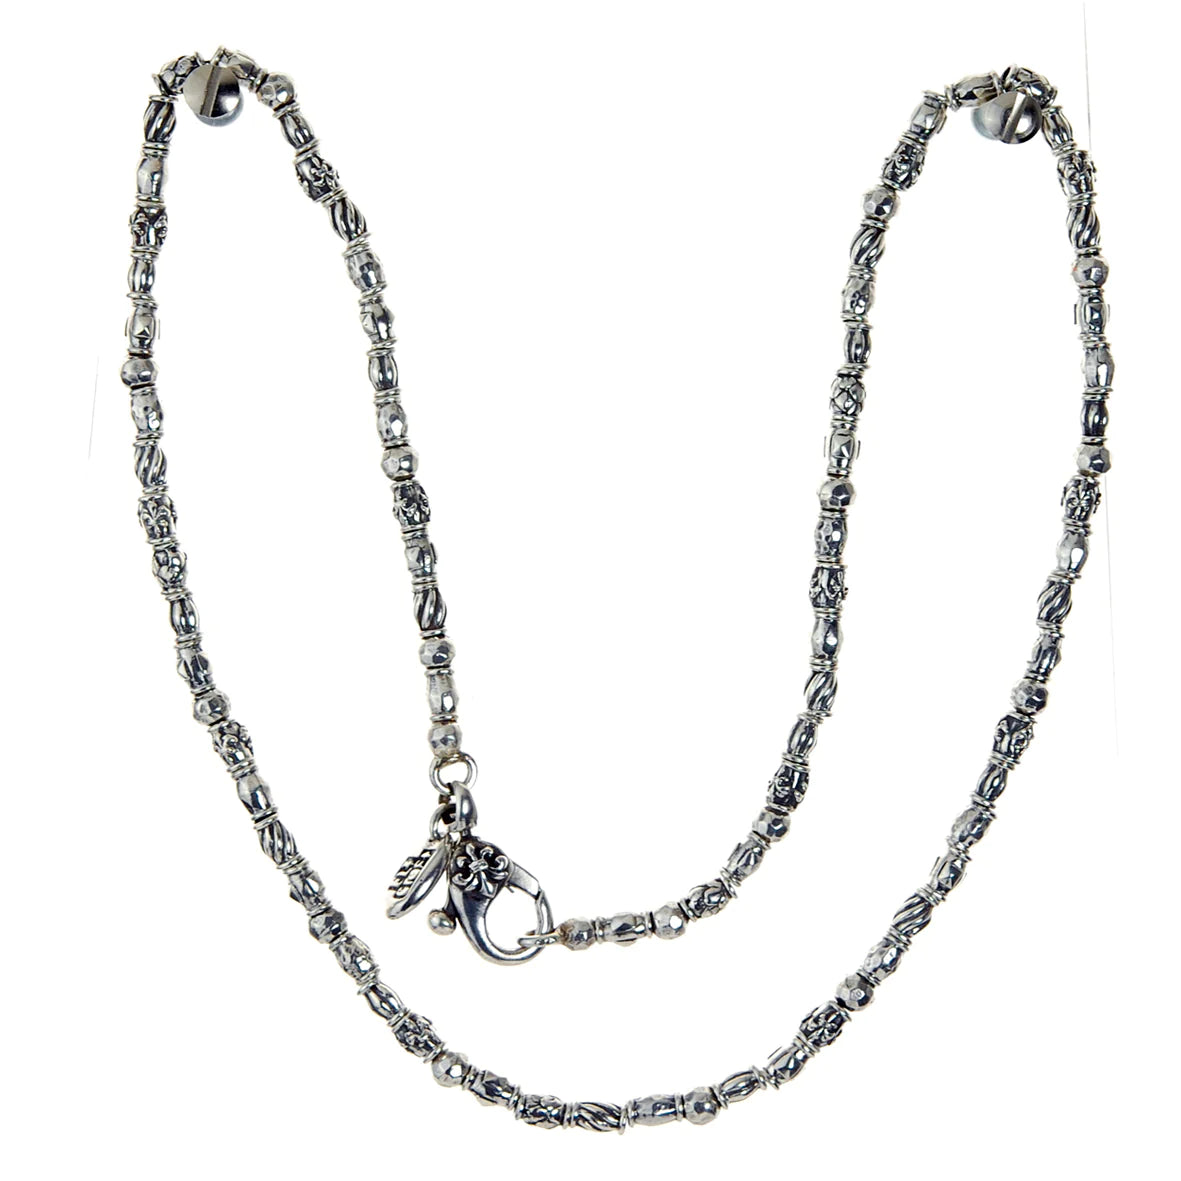 Silberne Halskette von Elfcraft mit verschiedenen Hülsen, die an Lilien, Drachen und Spiralen erinnern